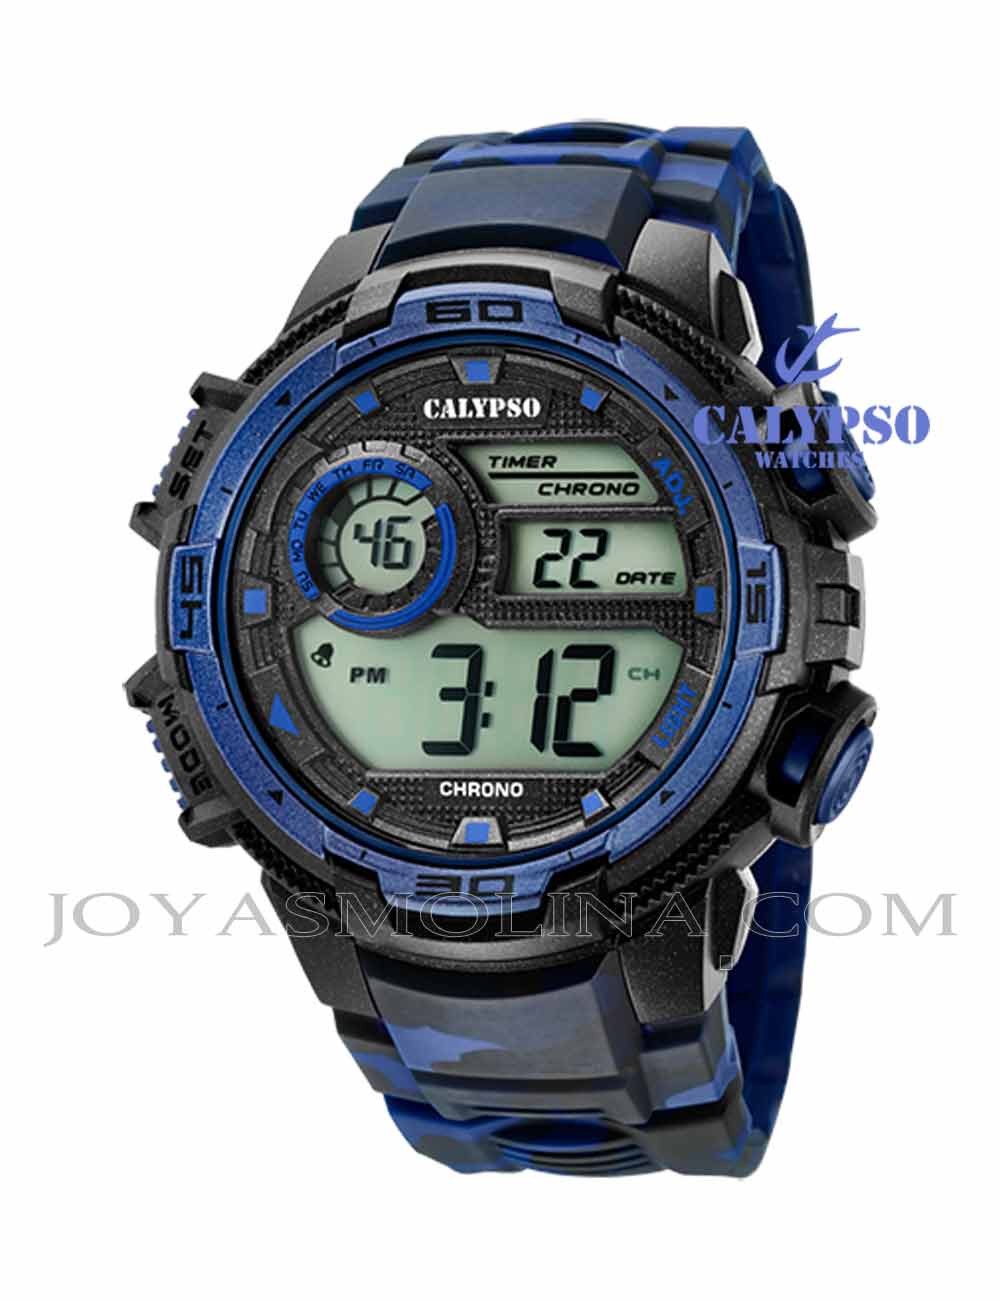 Reloj hombre Calypso digital goma K5723-1